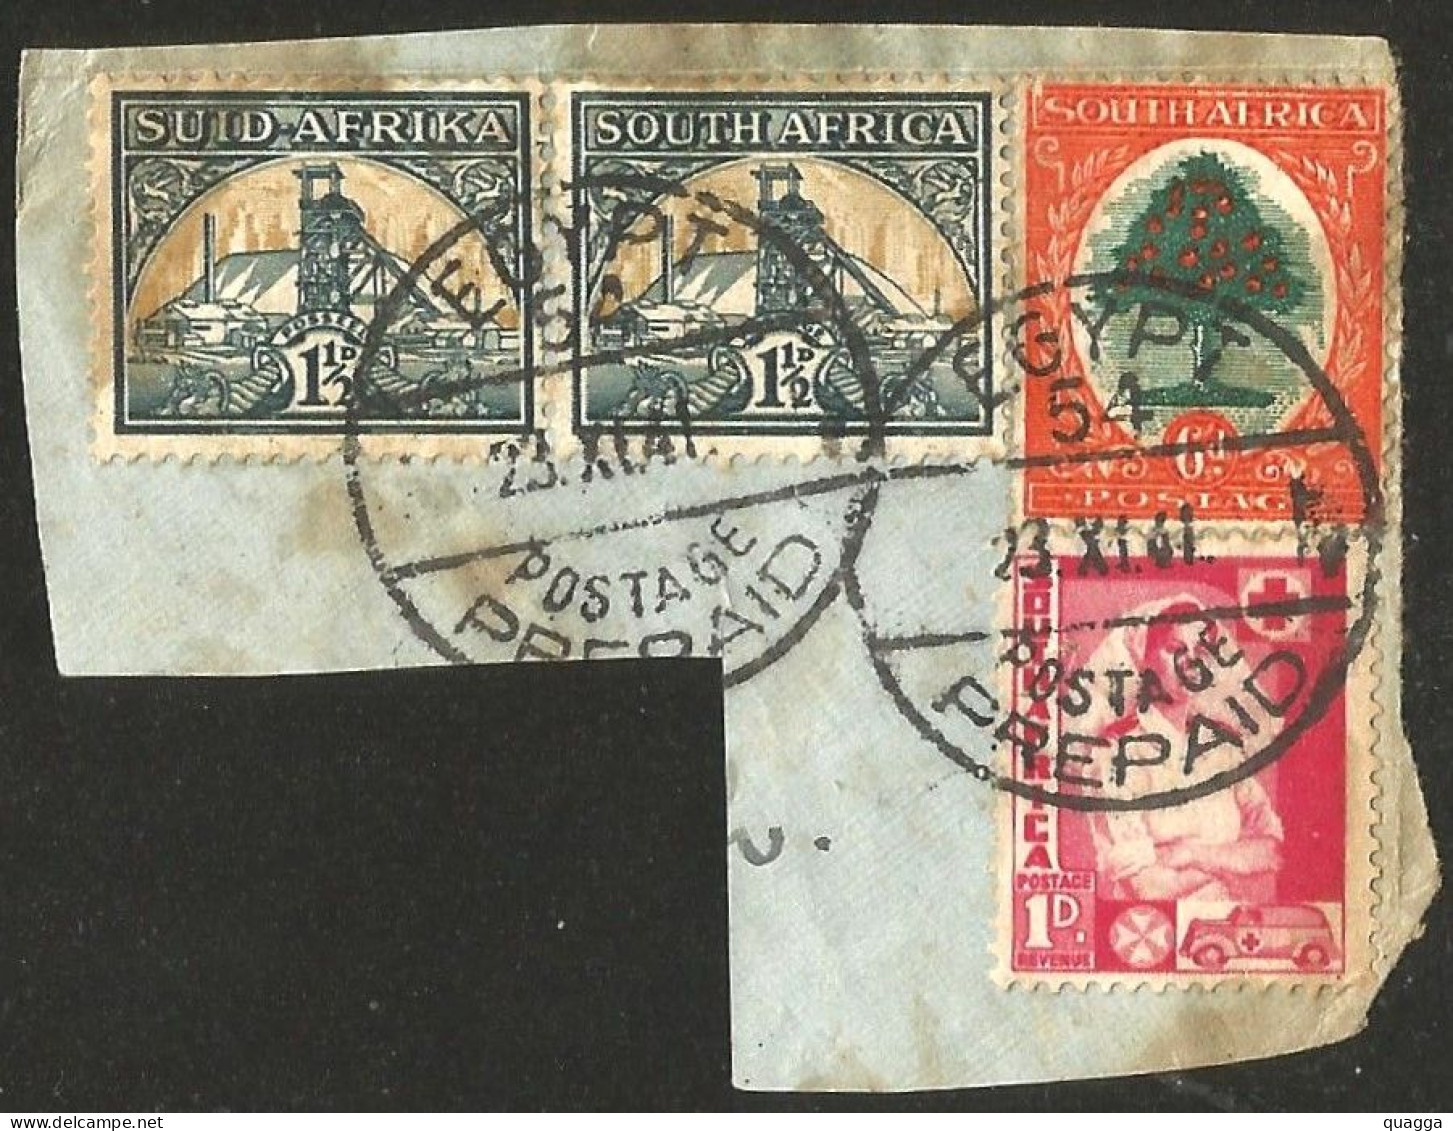 South Africa 1941-45. EGYPT 54 POSTAGE PREPAID Postmark. - Gebruikt